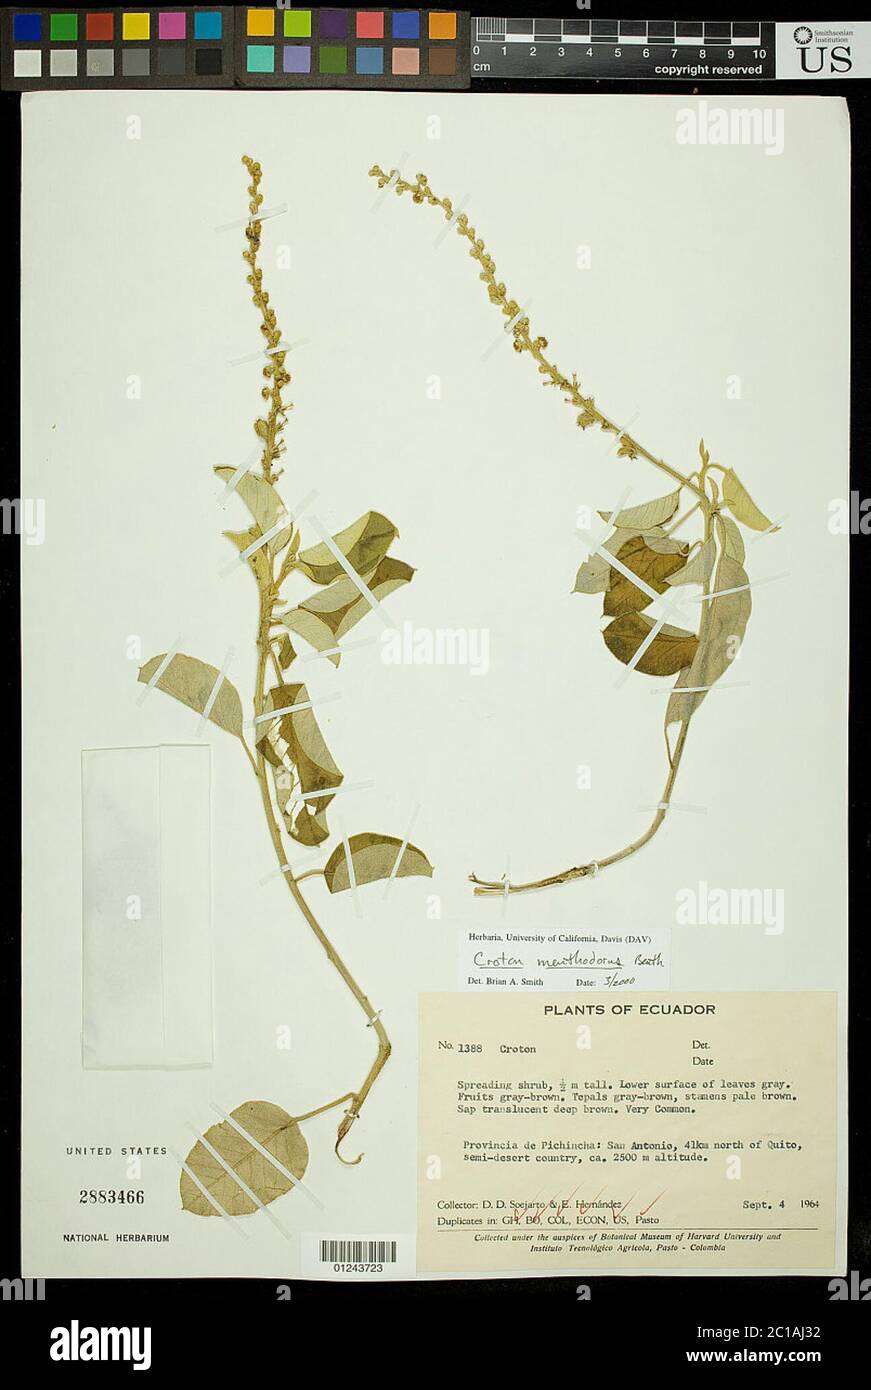 Croton menthodorus Benth Croton menthodorus Benth. Stock Photo